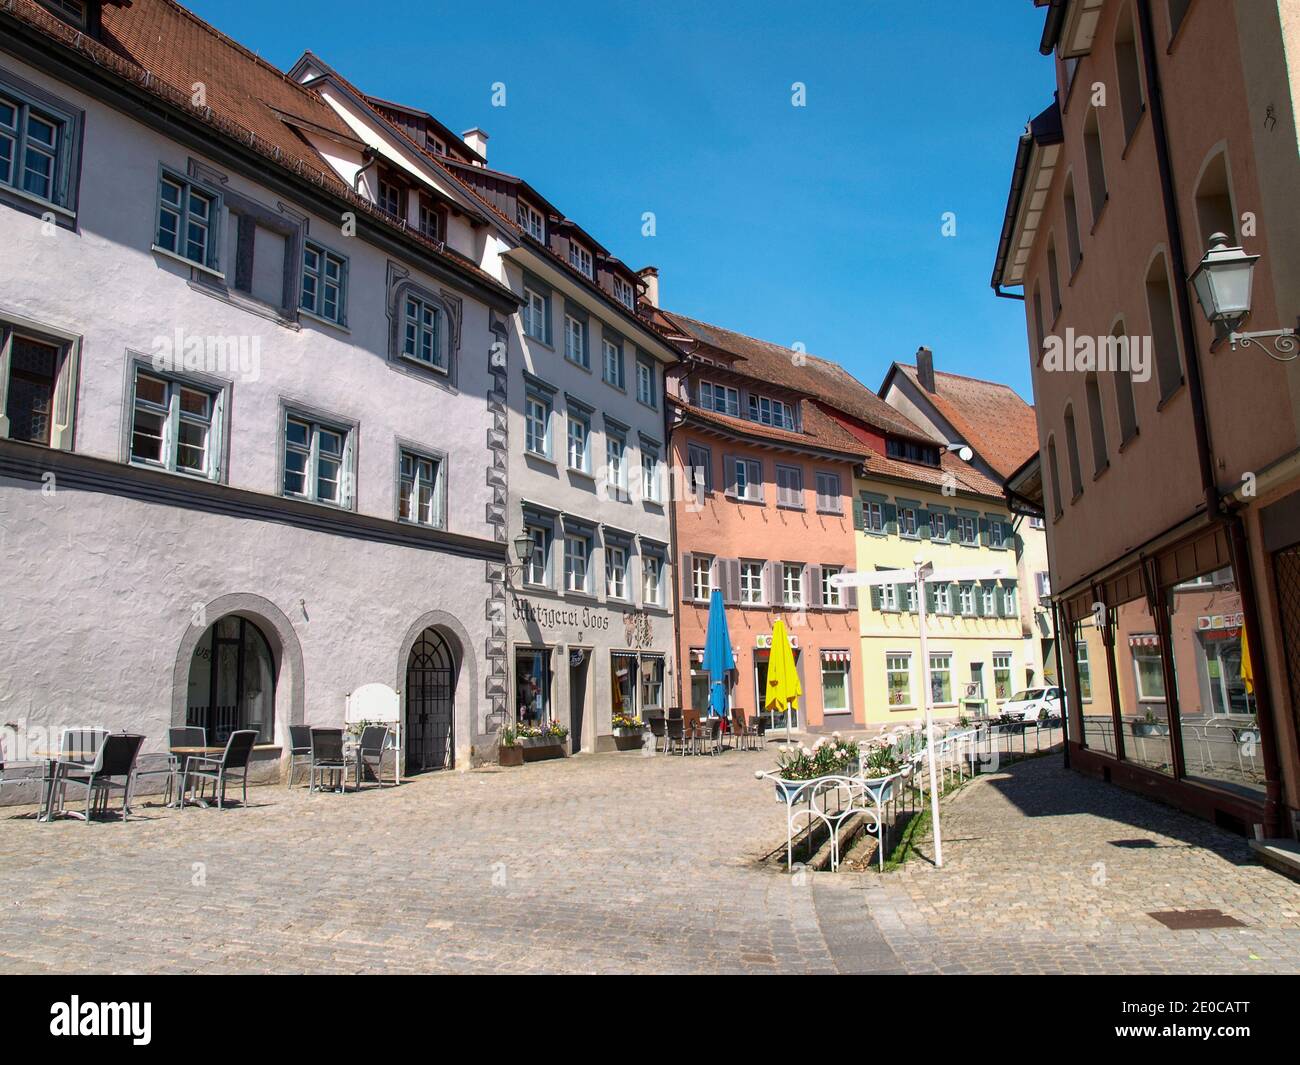 Wangen, Allemagne - 22 avril 2018 : panorama urbain de la ville historique Banque D'Images